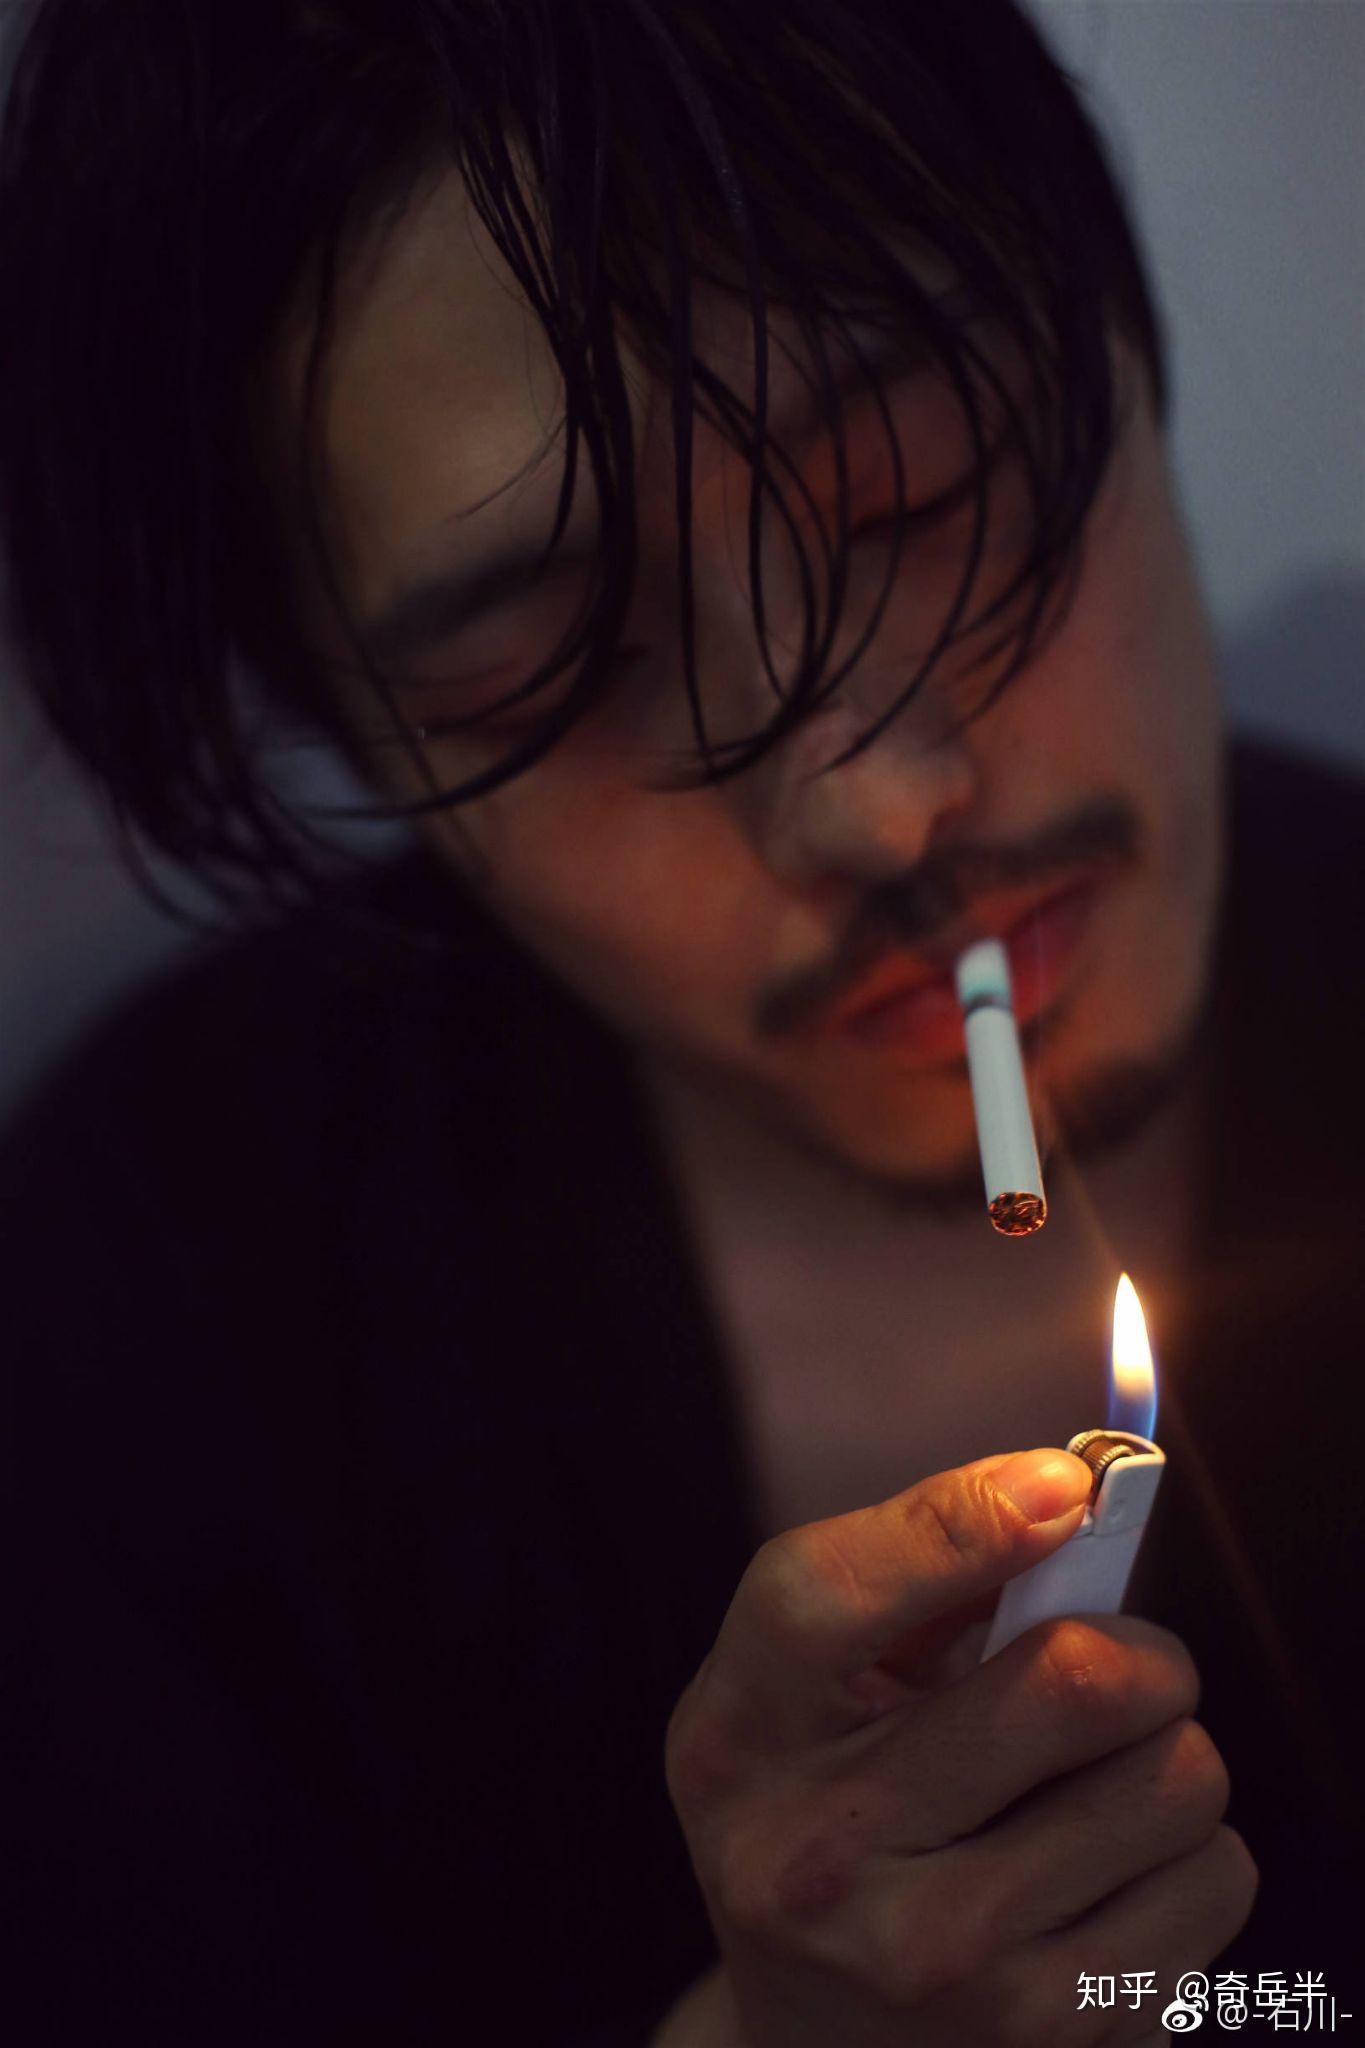 抽烟照片男伤感黑色图片